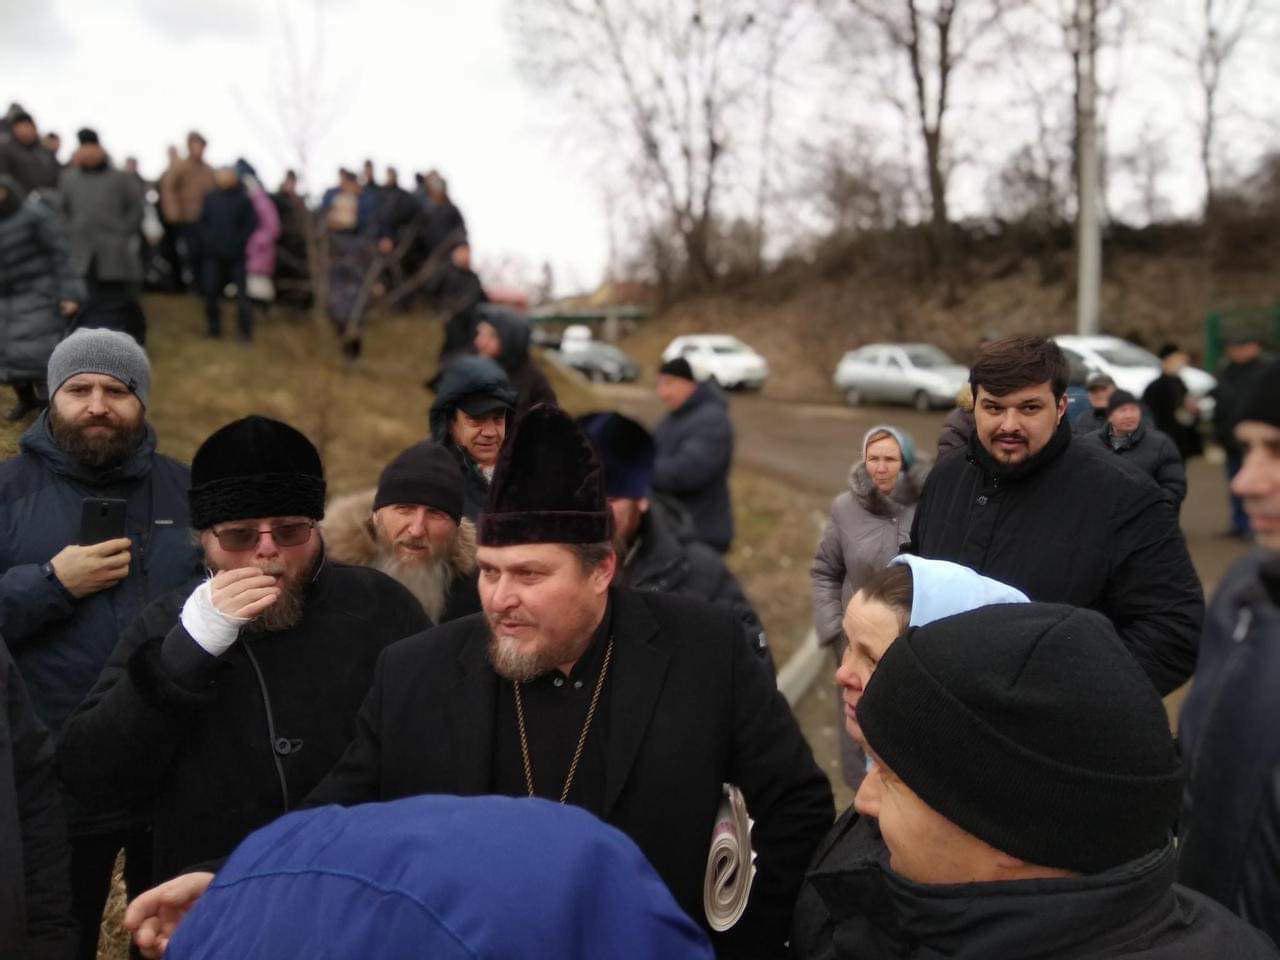 'Православне братство', Ігор Слободян- священник УПЦ МП, який бив військового, на фото праворуч у чорній куртці.